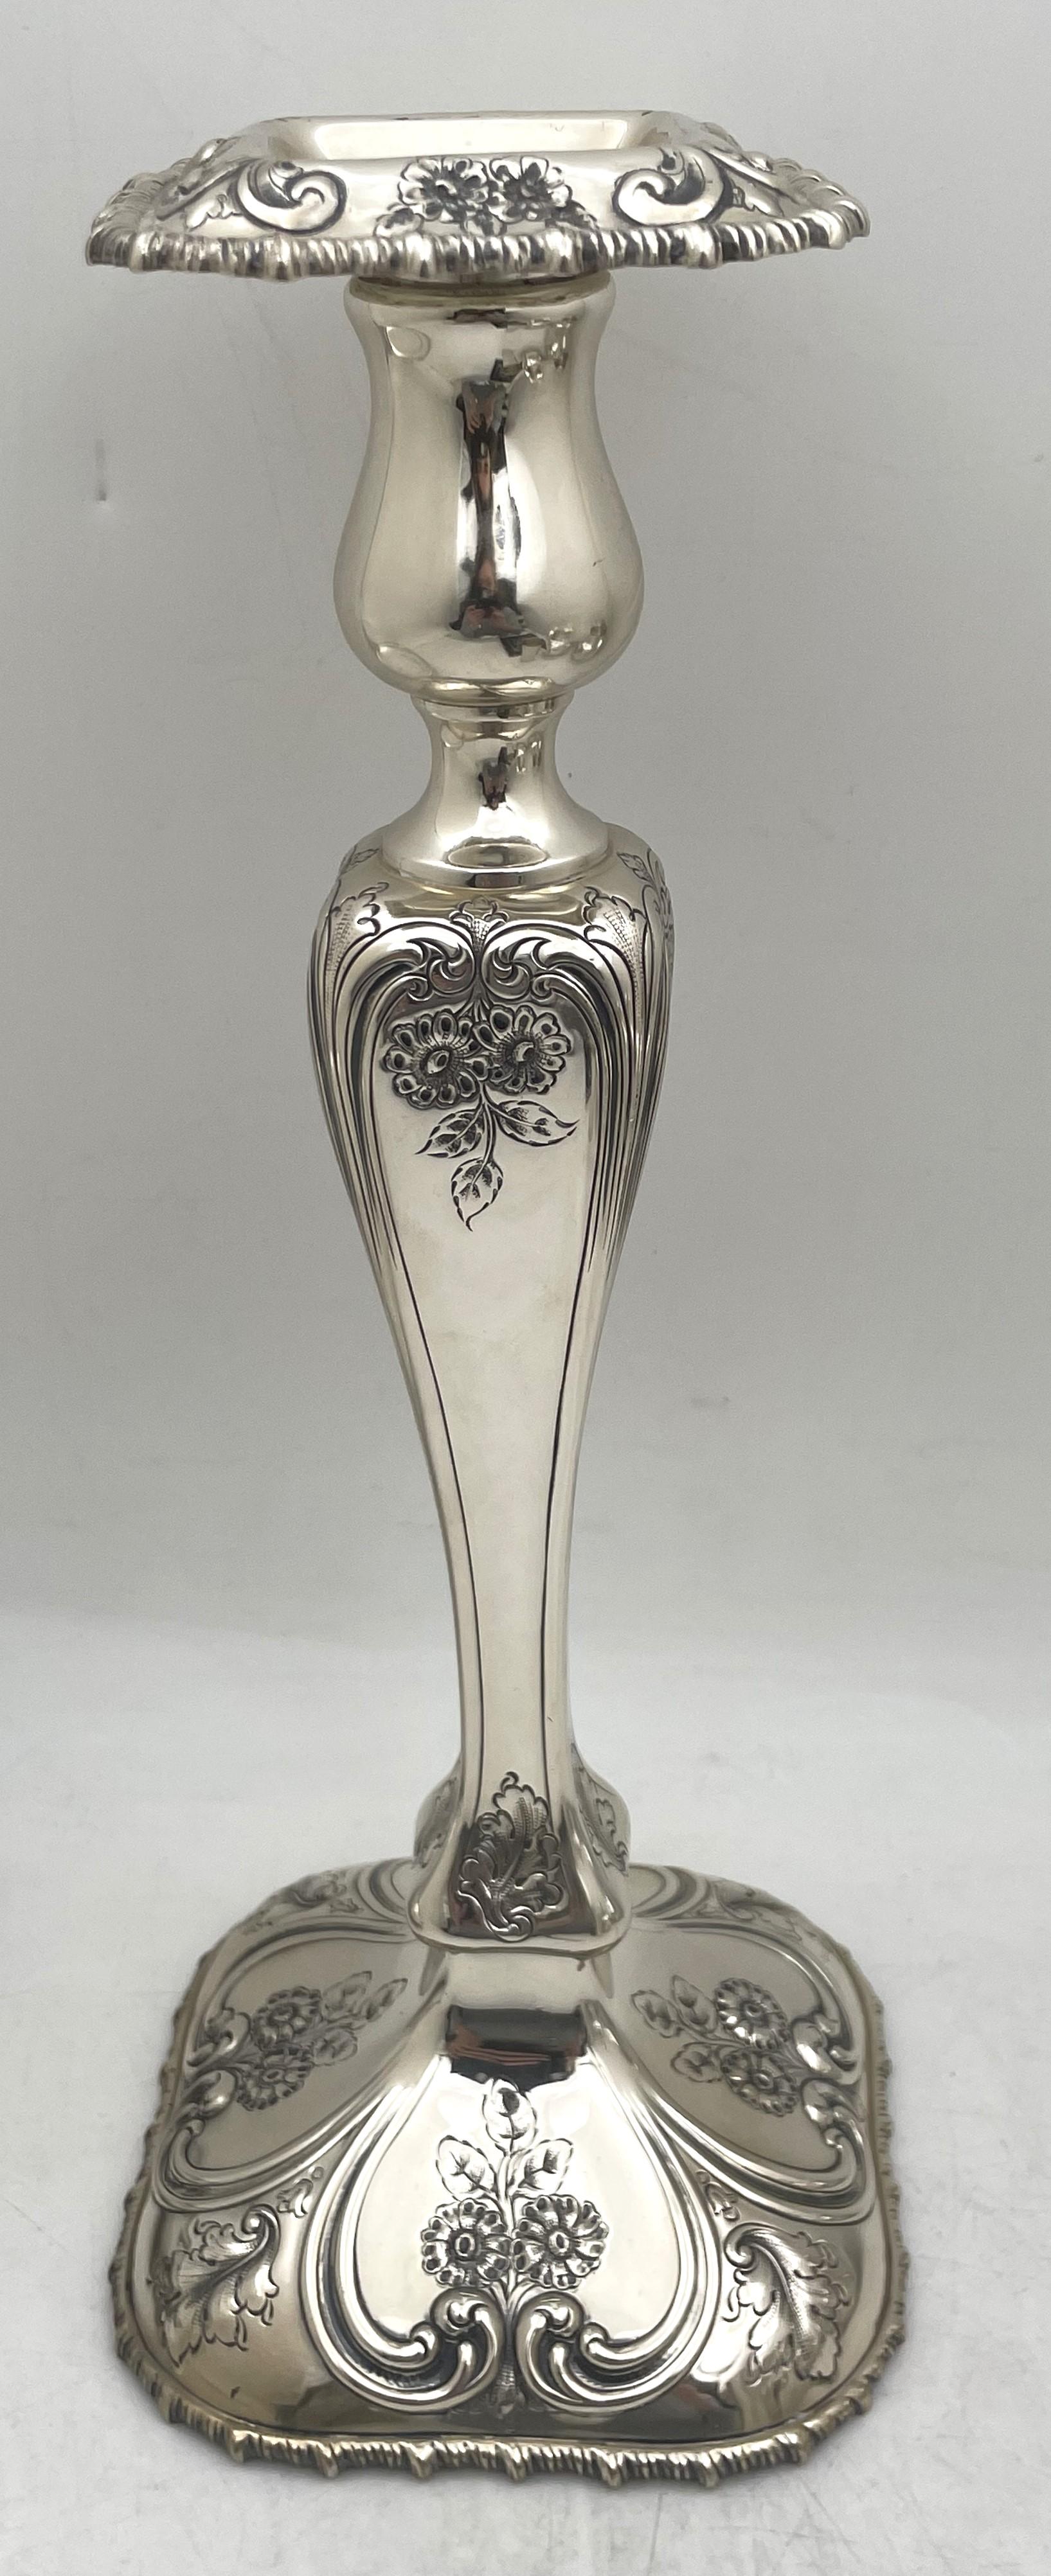 Shreve & Co. Paar Kerzenständer aus Sterlingsilber im Jugendstil aus dem frühen 20. Jahrhundert, wunderschön verziert mit floralen und kurvigen Motiven. Sie messen 12 3/4'' in der Höhe und 5 1/4'' in der Tiefe, sind gewogen (das Bruttogewicht